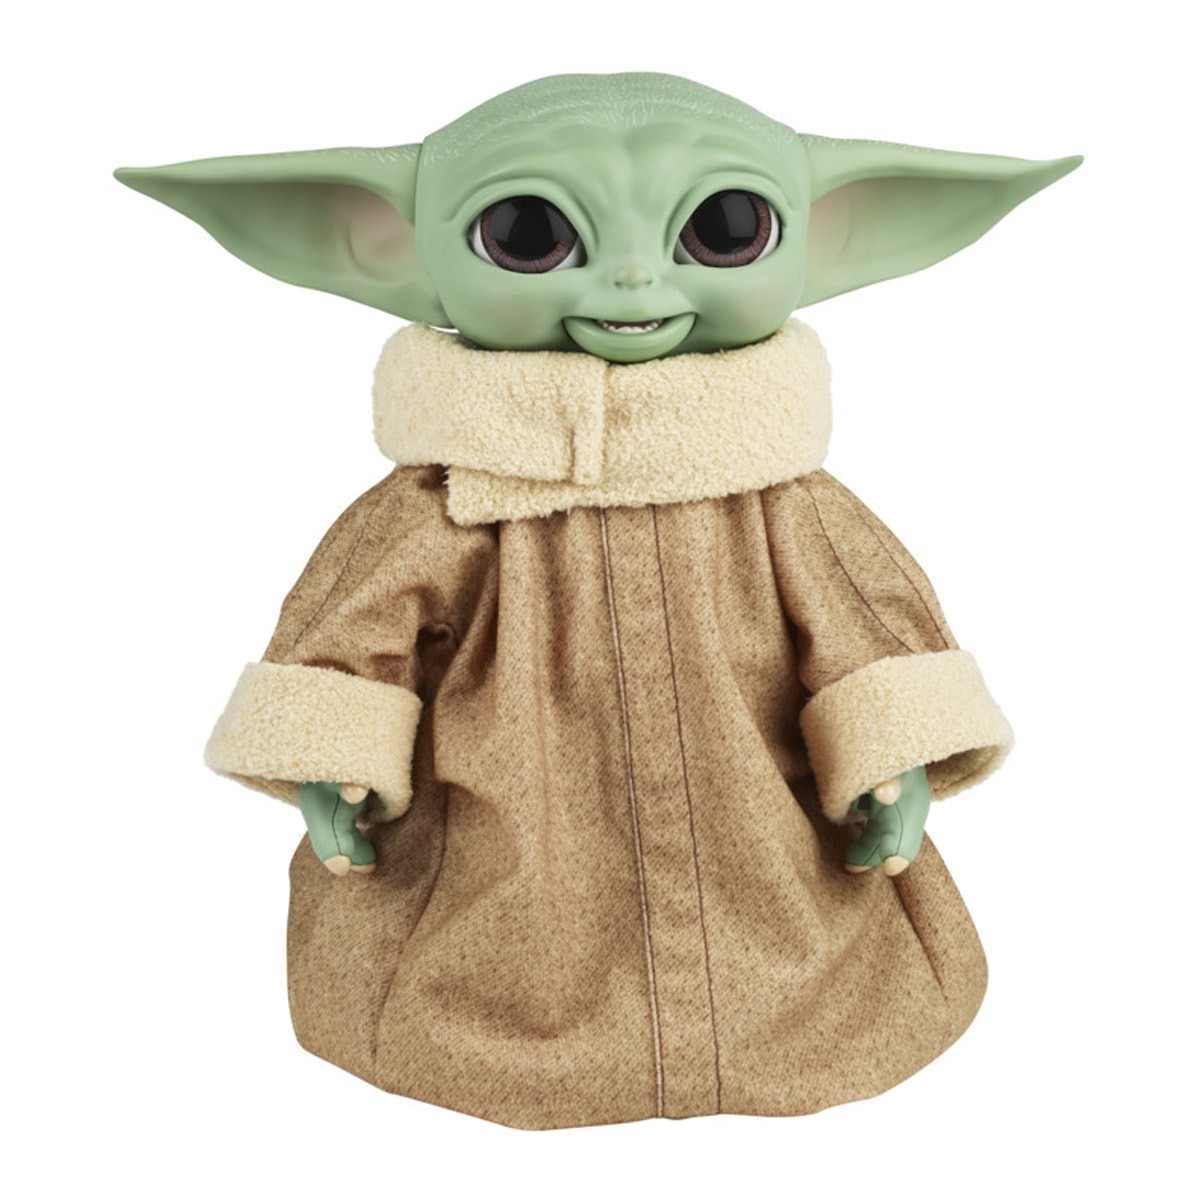 Hasbro - Animatronic Baby Yoda Grogu El Niño The Mandalorian Star Wars